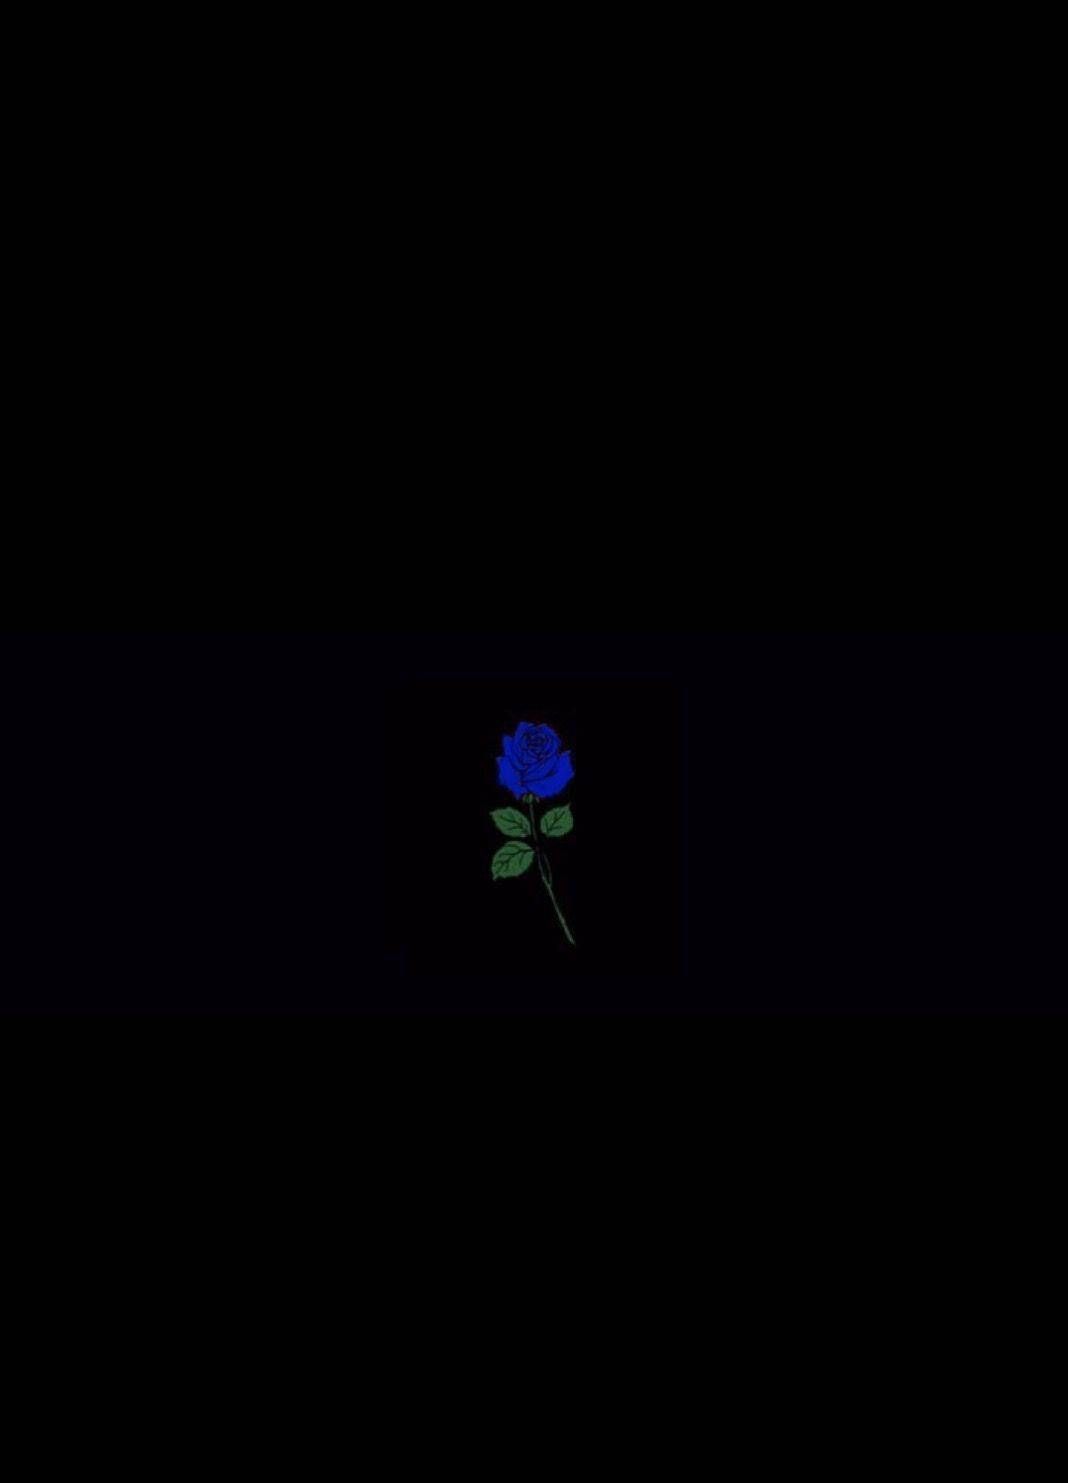 A blue rose on black background - Black